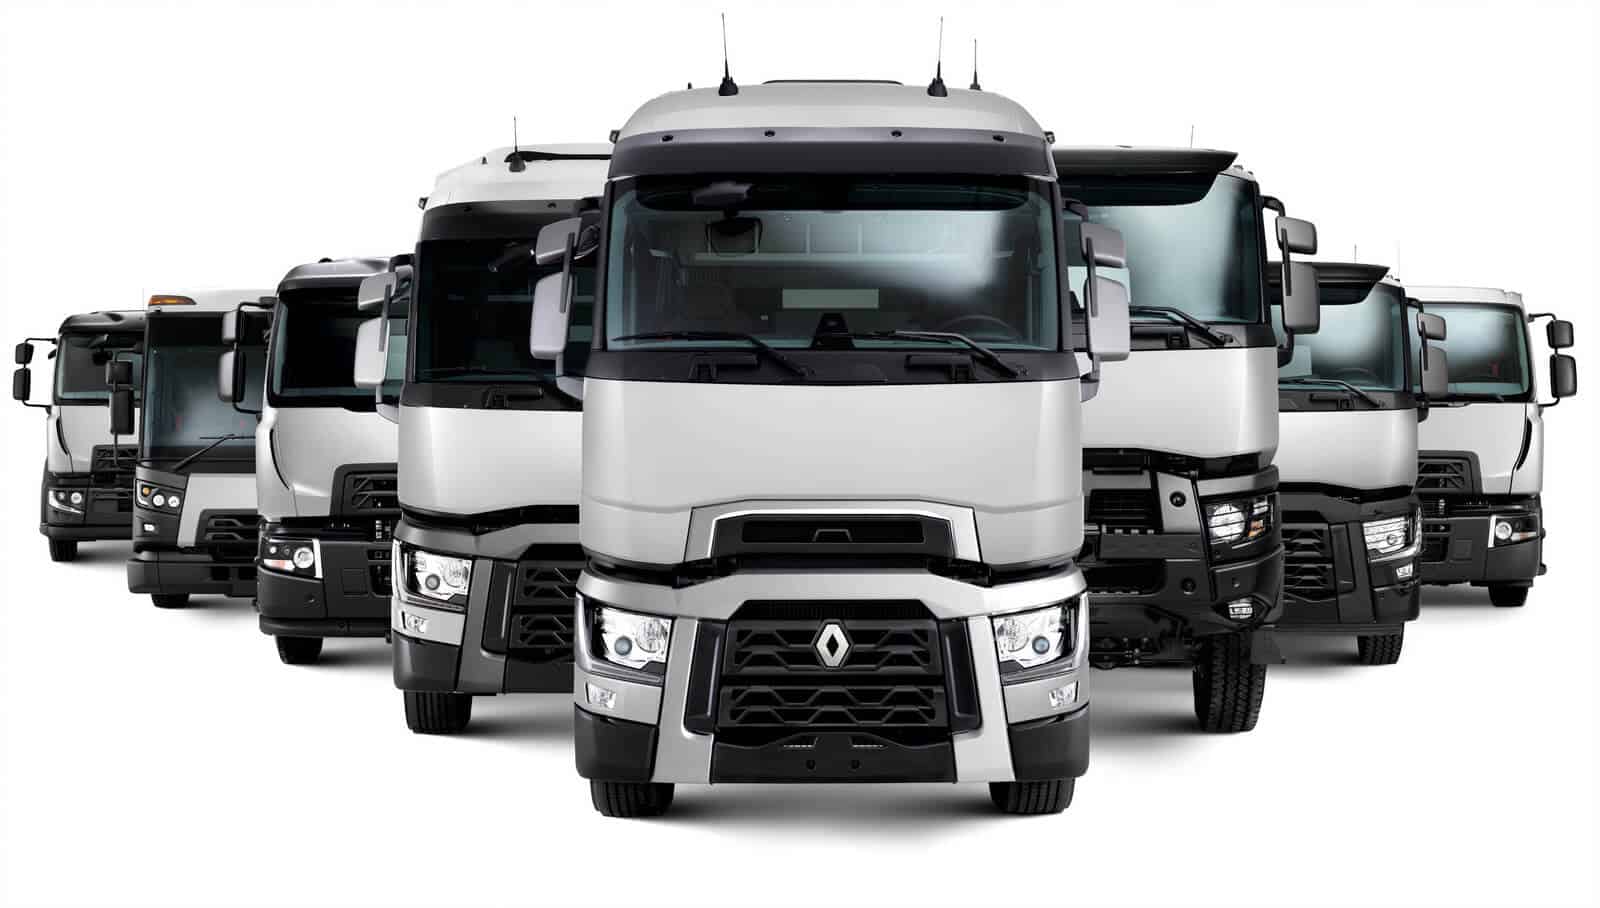 Accessori e Ricambi per Camion TIR e veicoli industriali - Truck